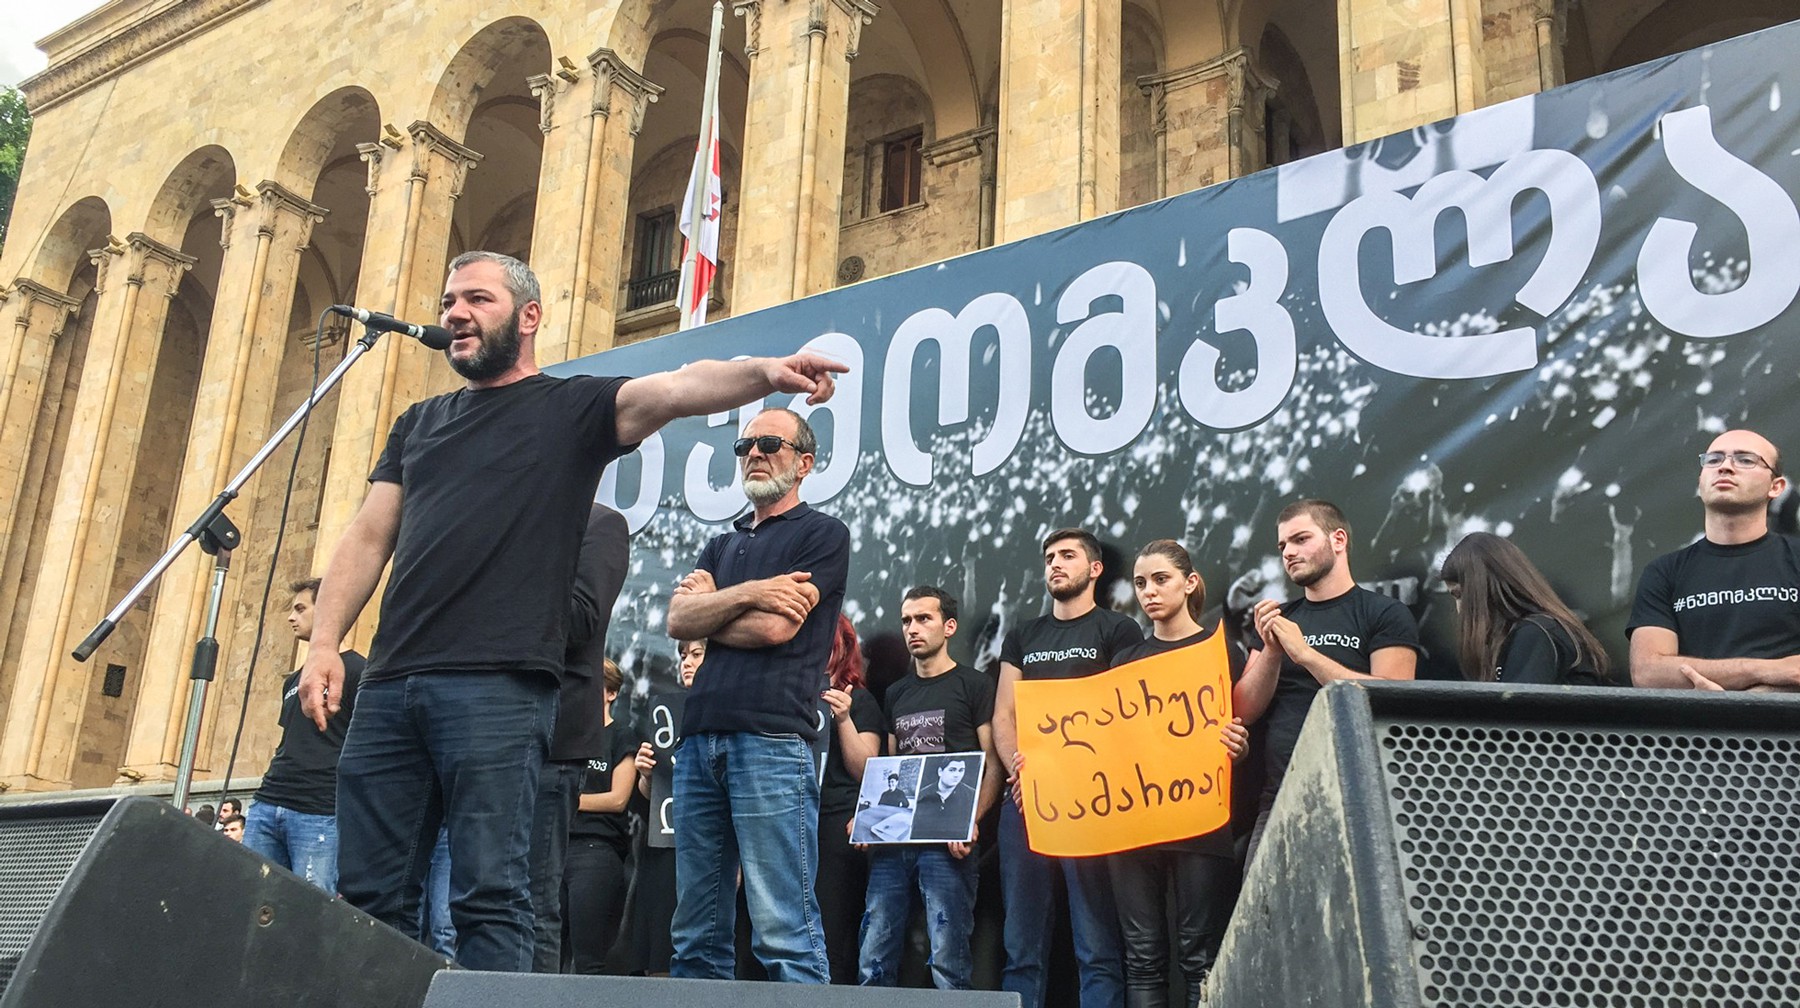 Dailystorm - «Не убивай меня». Матери погибших детей провели протестный митинг в Тбилиси